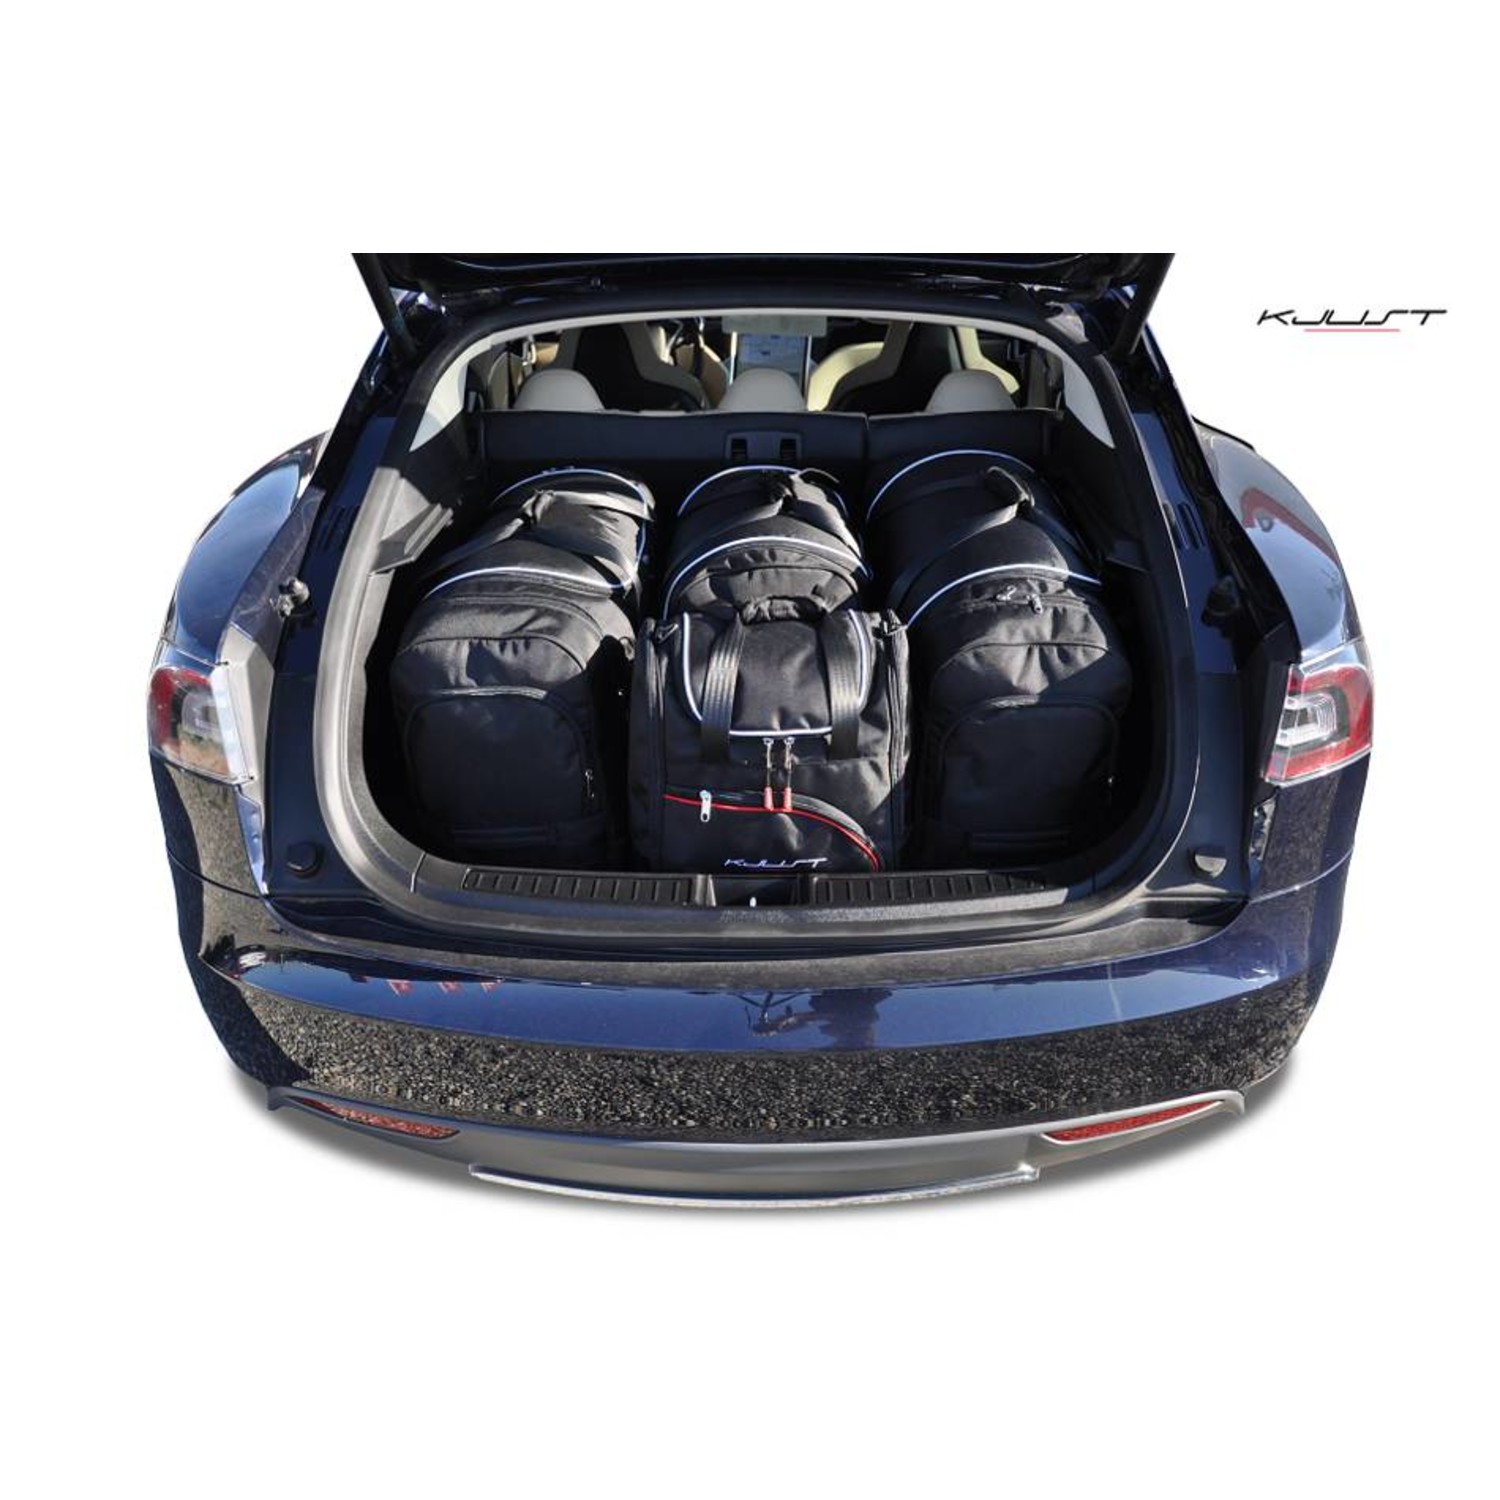 Maßgefertigtes Reisetaschen Set für Tesla S (vorne und hinten